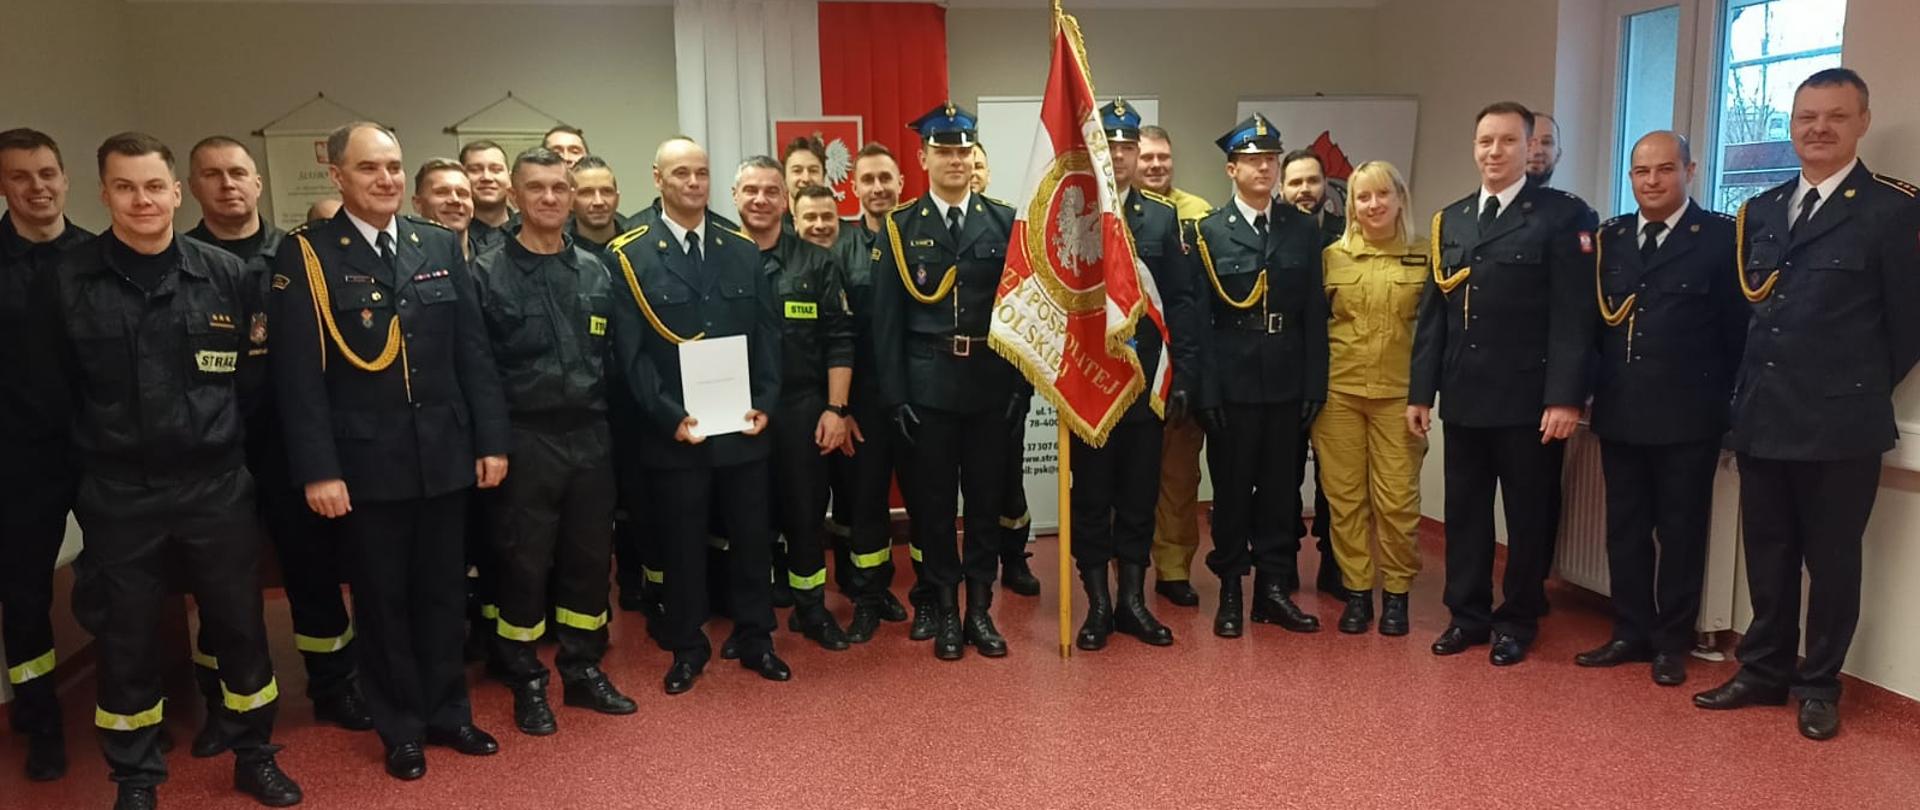 Odejście na zaopatrzenie emerytalne st. ogn. Piotra Korczyńskiego - strażacy ubrani w mundury wyjściowe koloru granatowego ze sznurem.